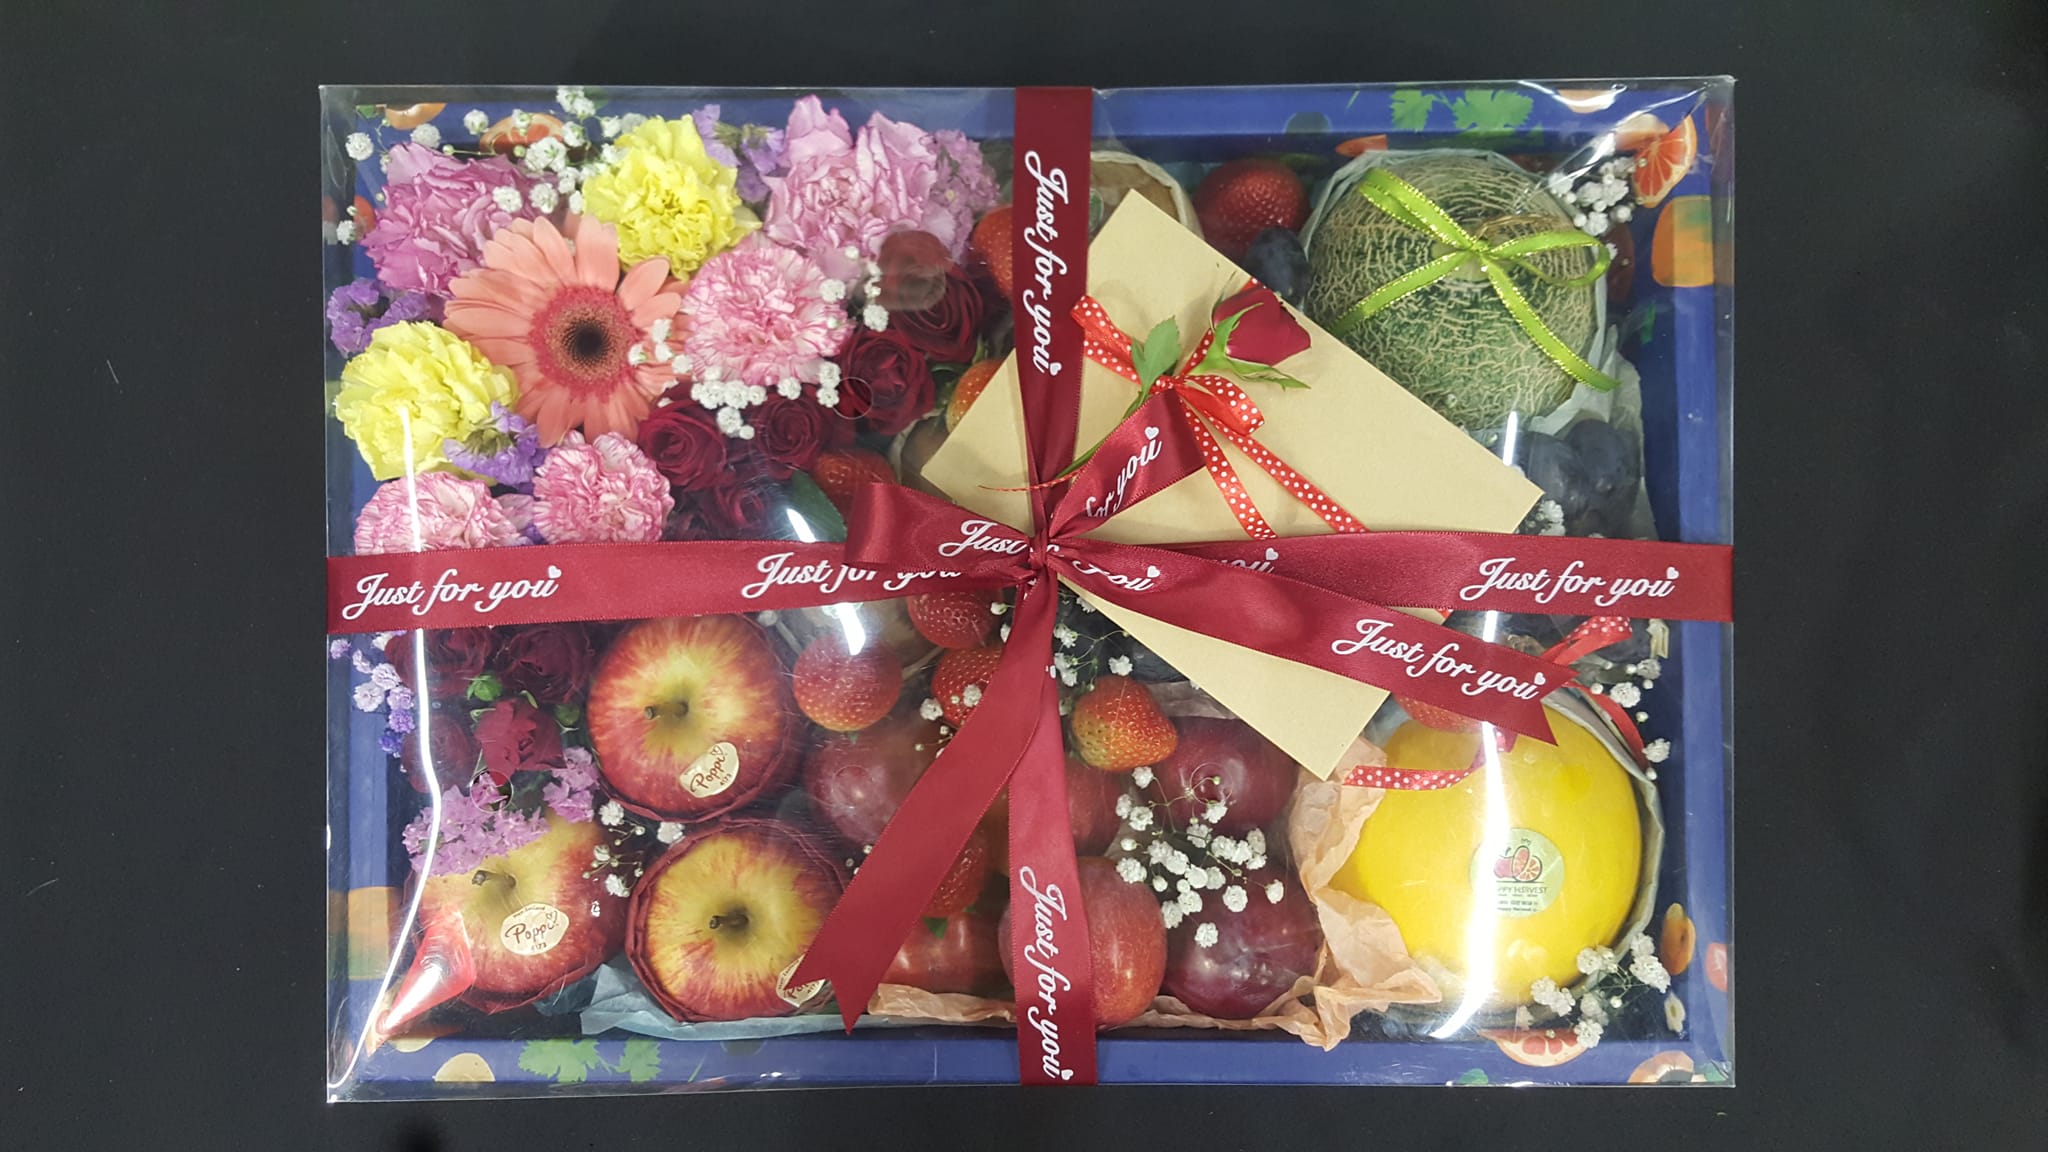 D One Flower Fruit Box